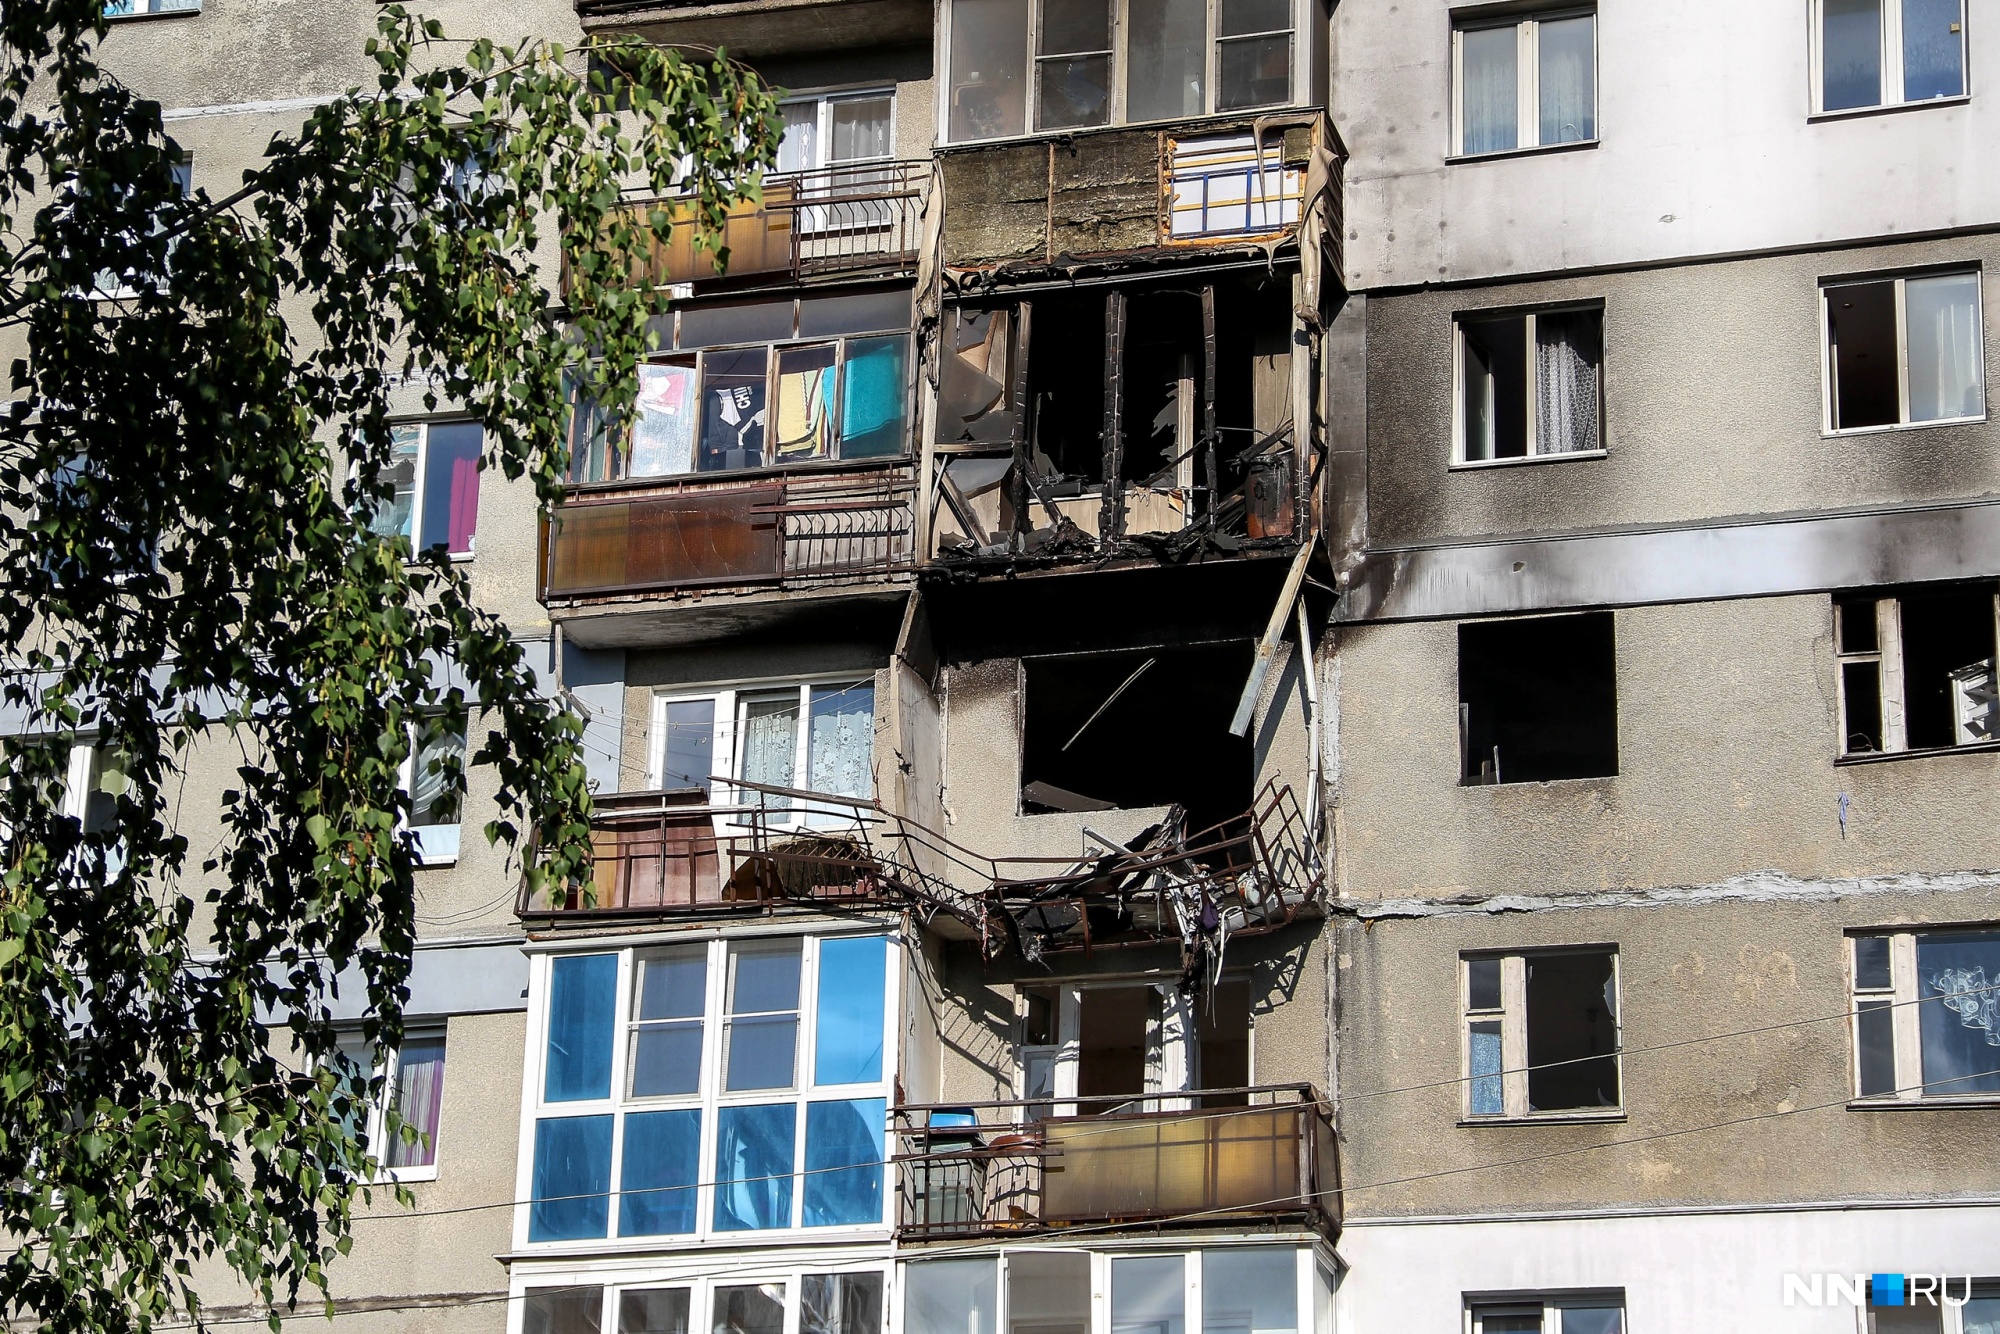 Власти окончательно решили сносить дом на Краснодонцев, где взорвался газ